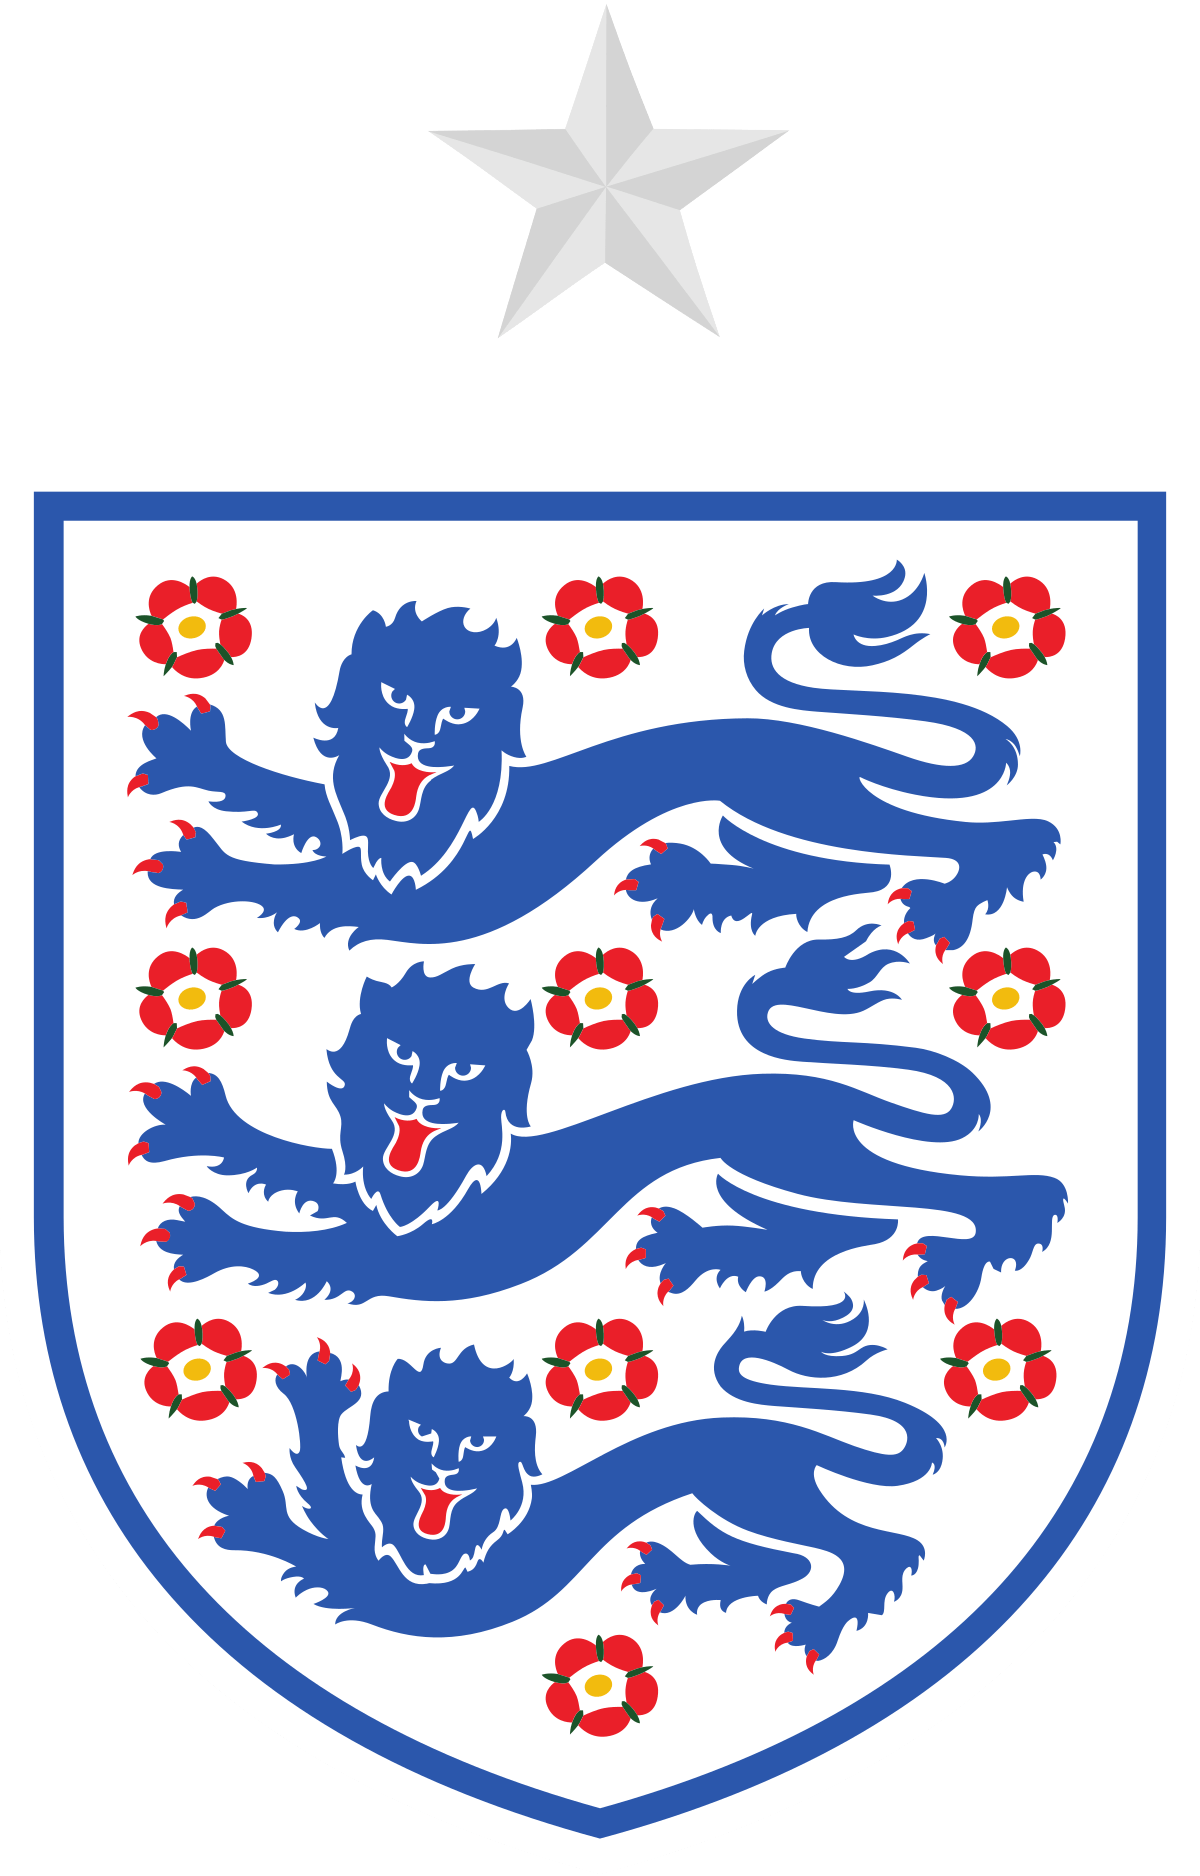 England Logo - England national football team